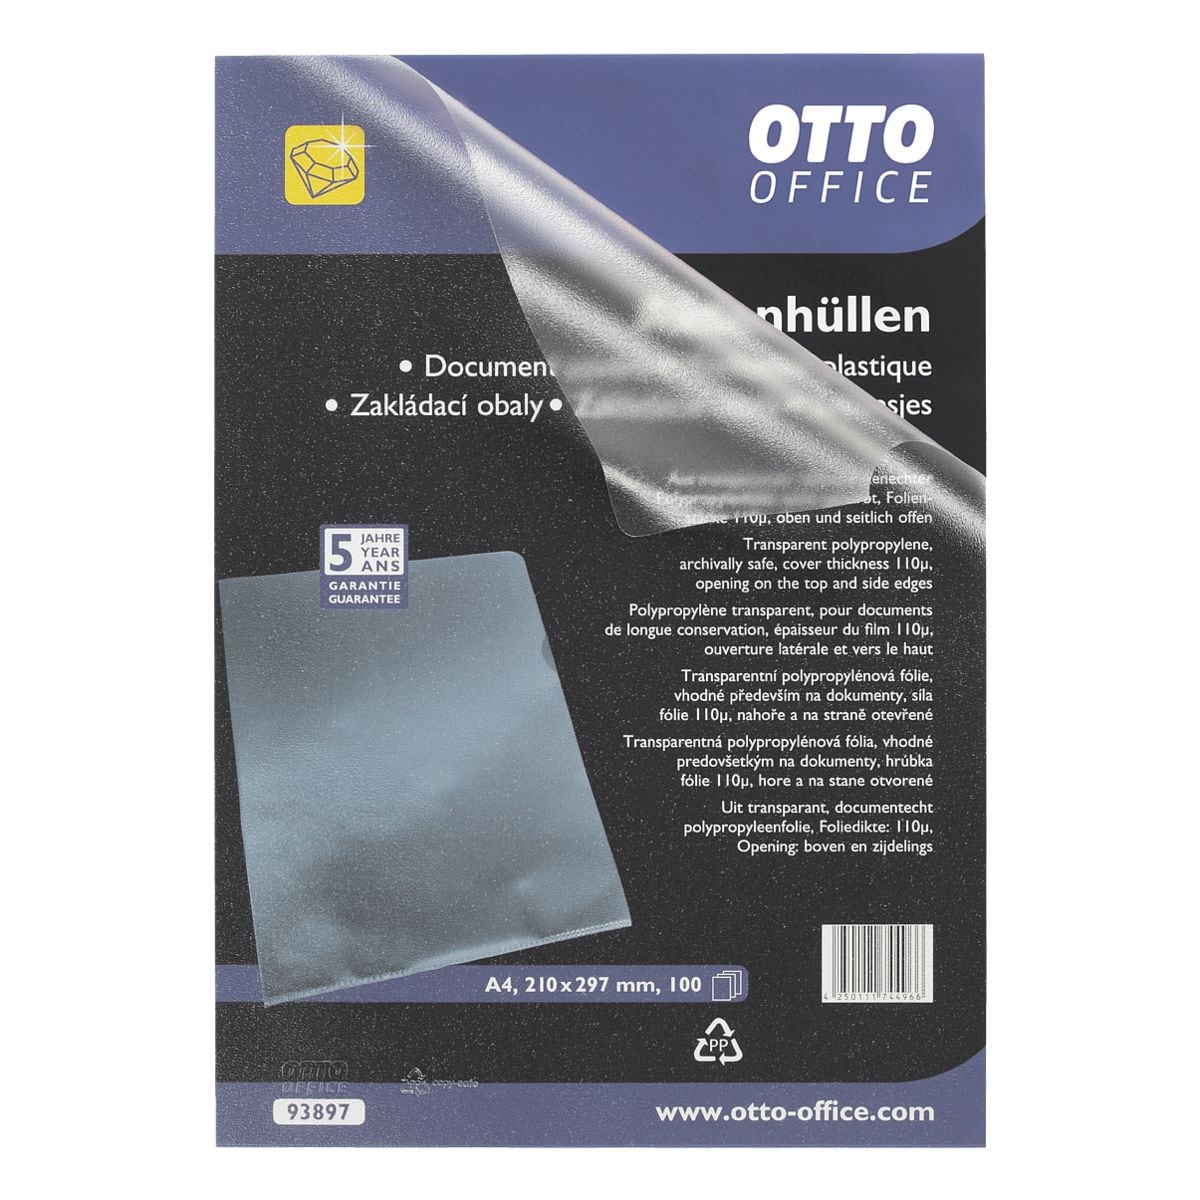 OTTO Office Premium 100er-Pack Sichthllen Premium - genarbt